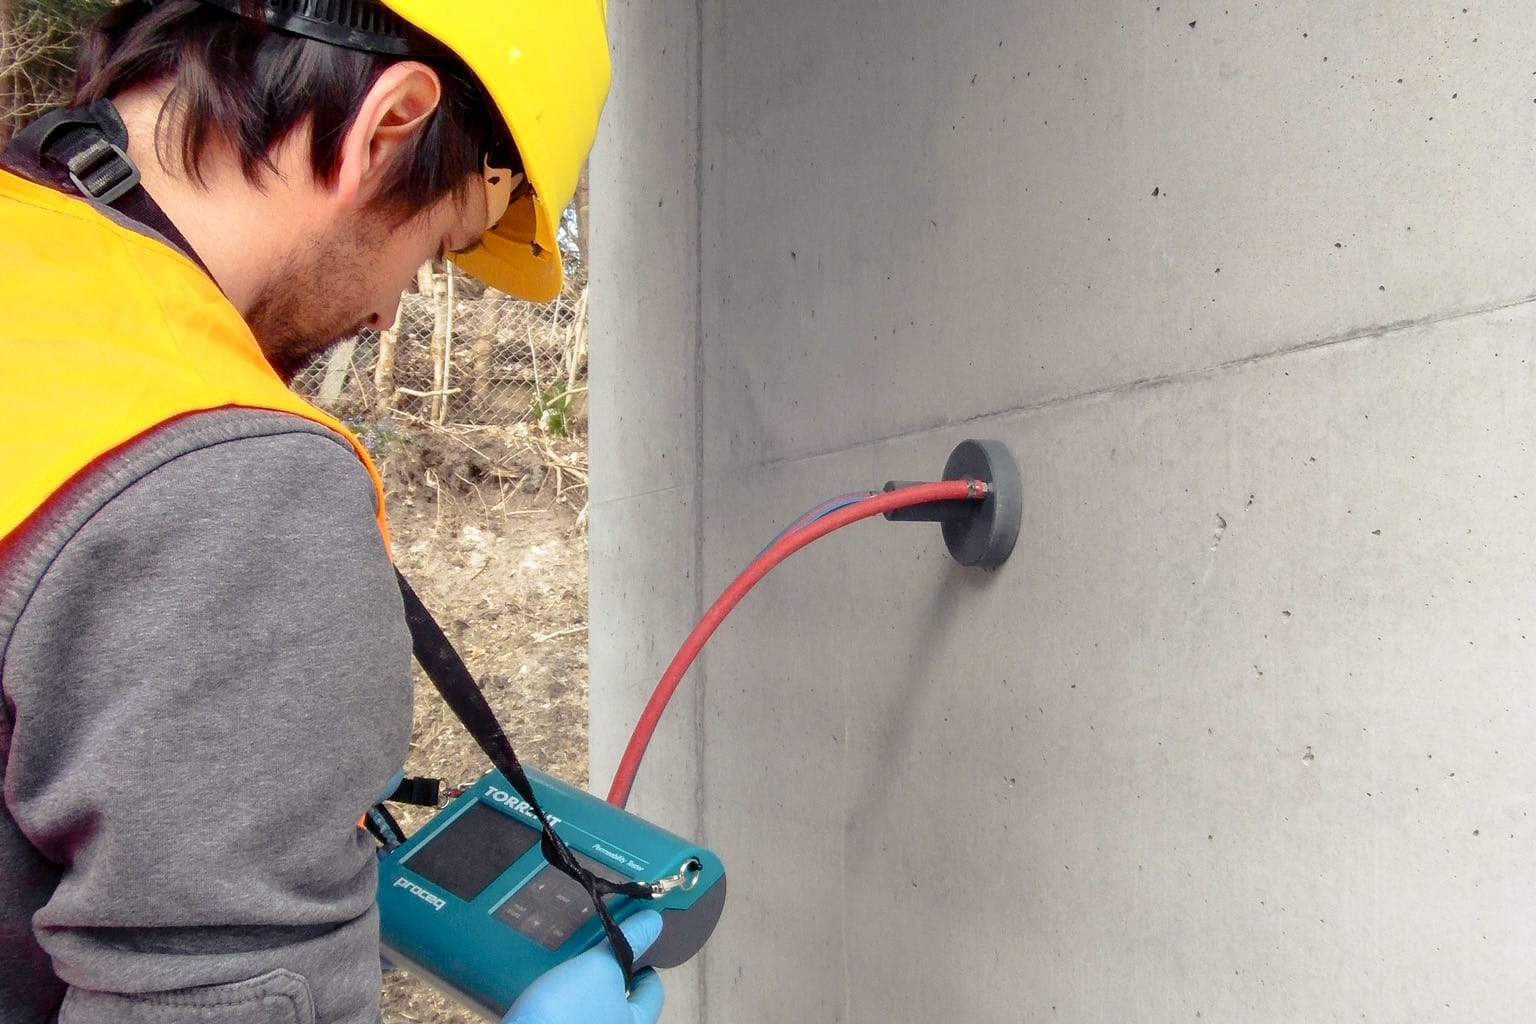 Gerät ( Torrent) zur Messung der Permeabilität von Beton an einer Betonstütze gehalten von einem Mann mit Bauhelm und Warnweste